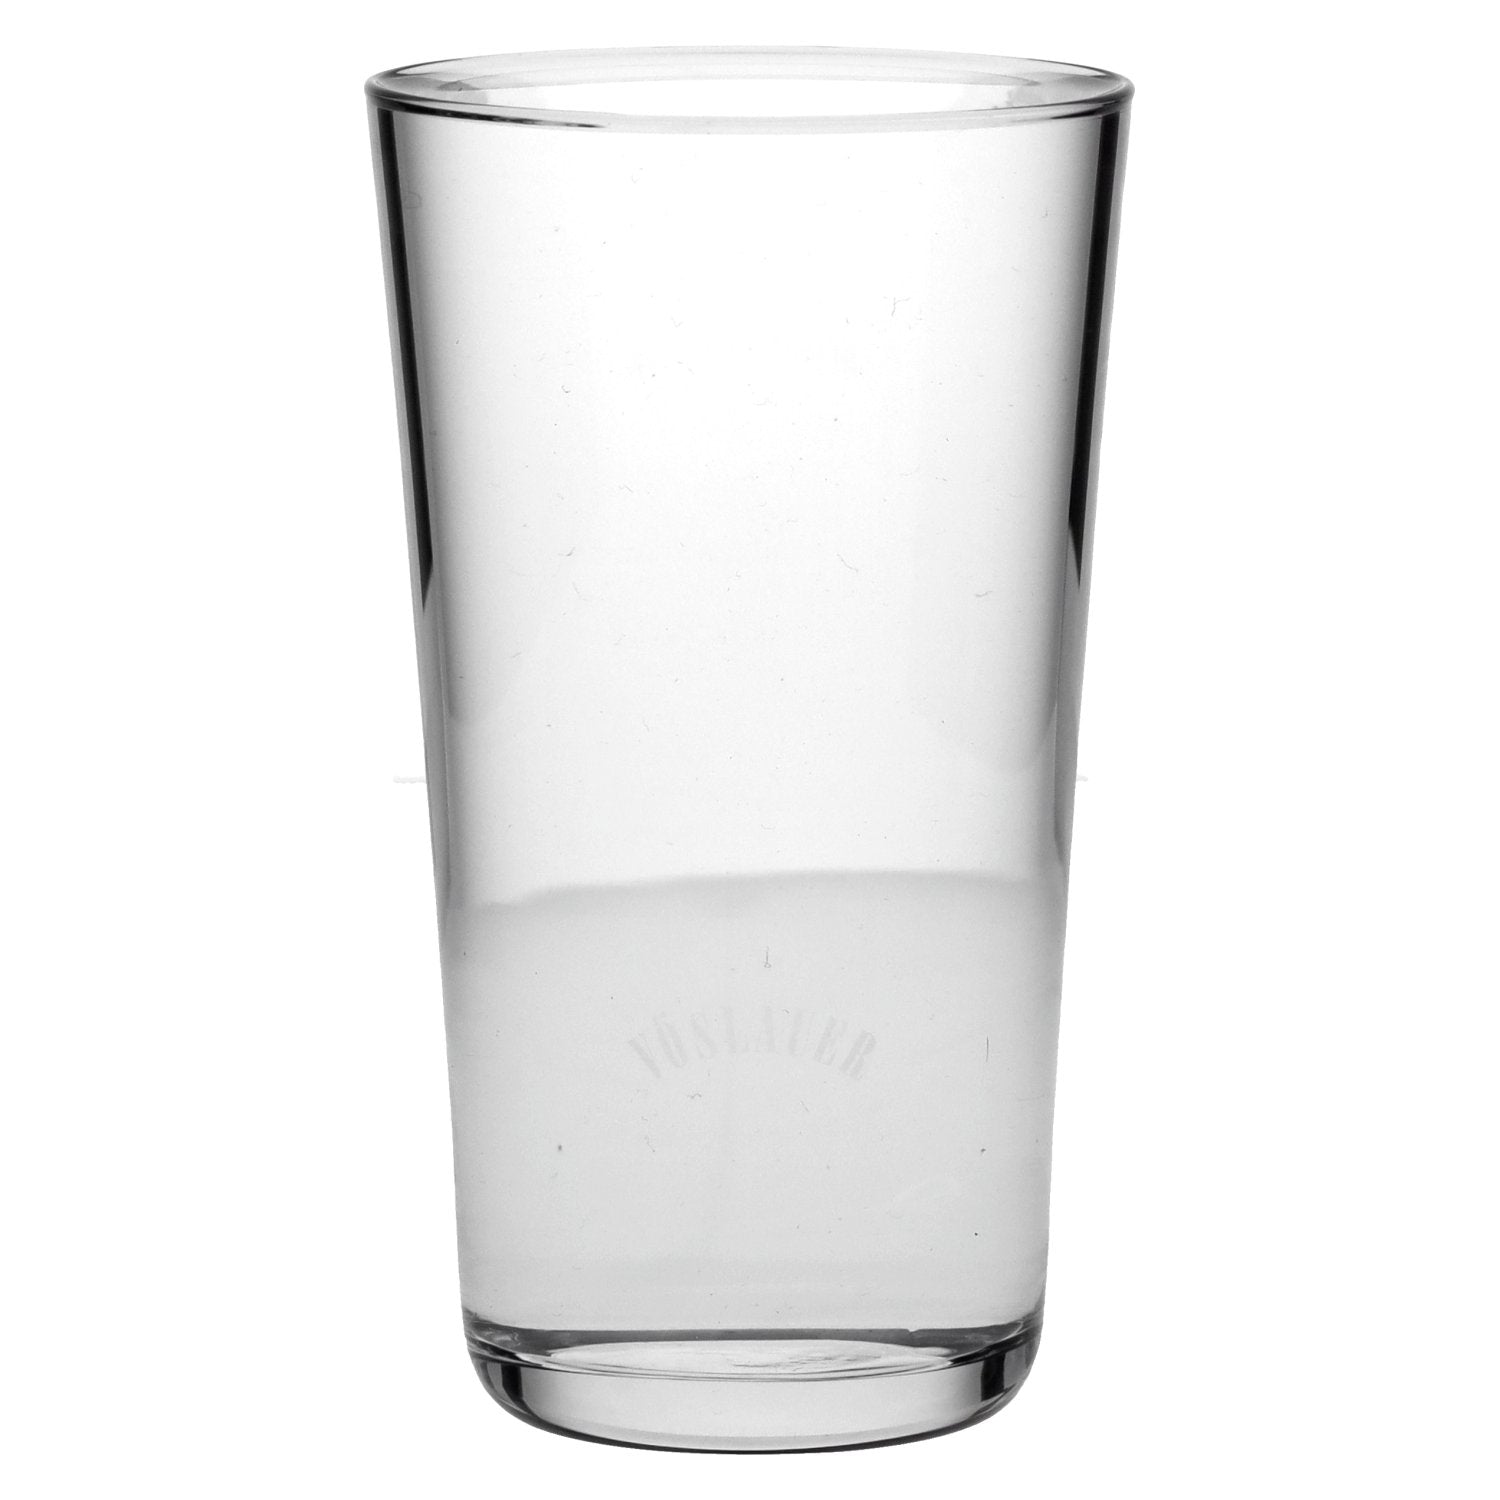 Voeslauer glass "High"